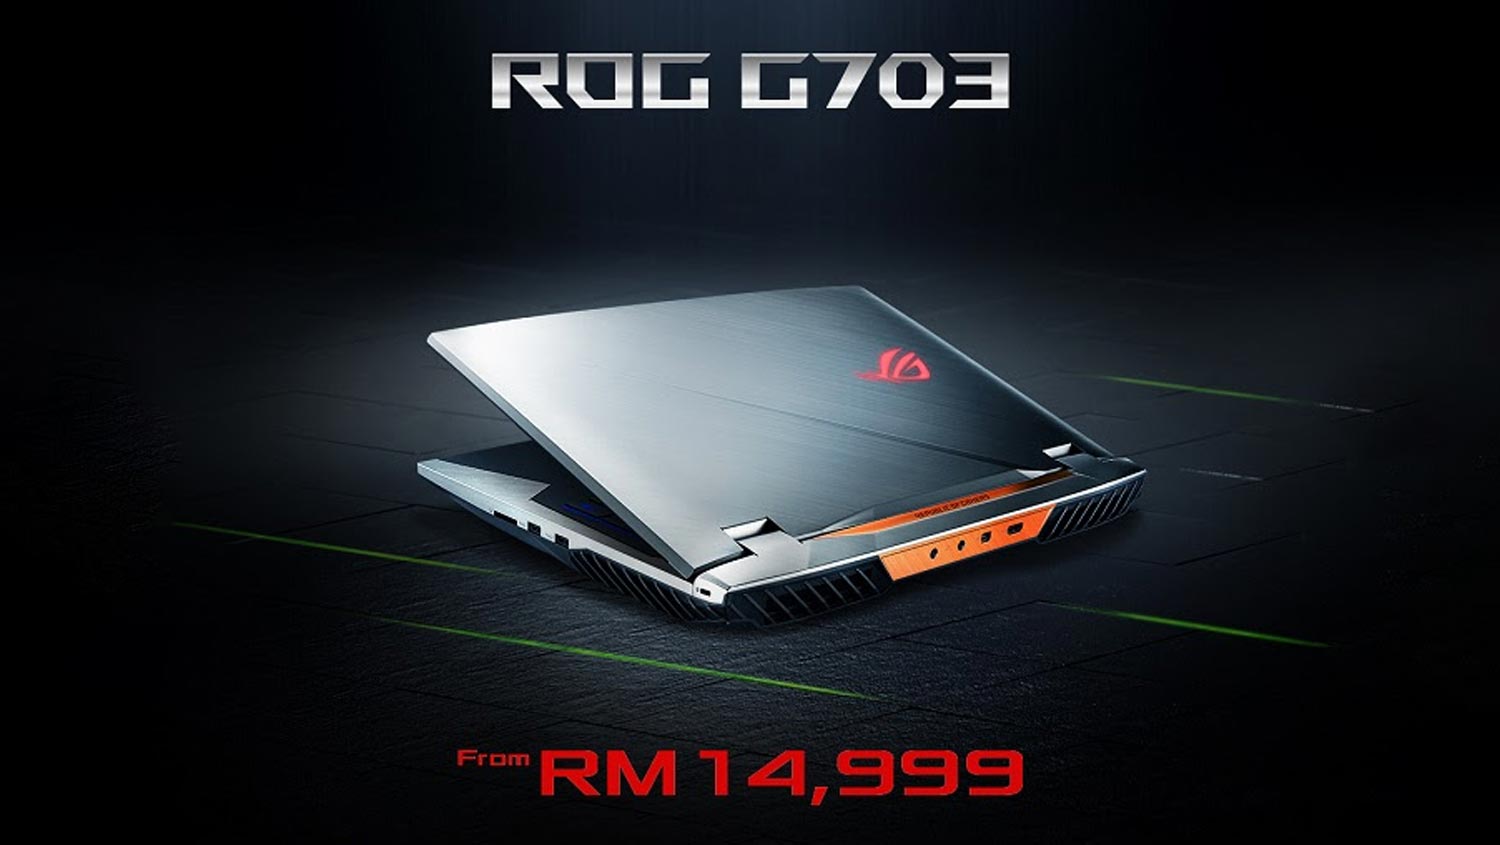 ASUS ROG G703 Dengan RTX 2080 Kini Dijual Pada Harga Bermula RM14,999